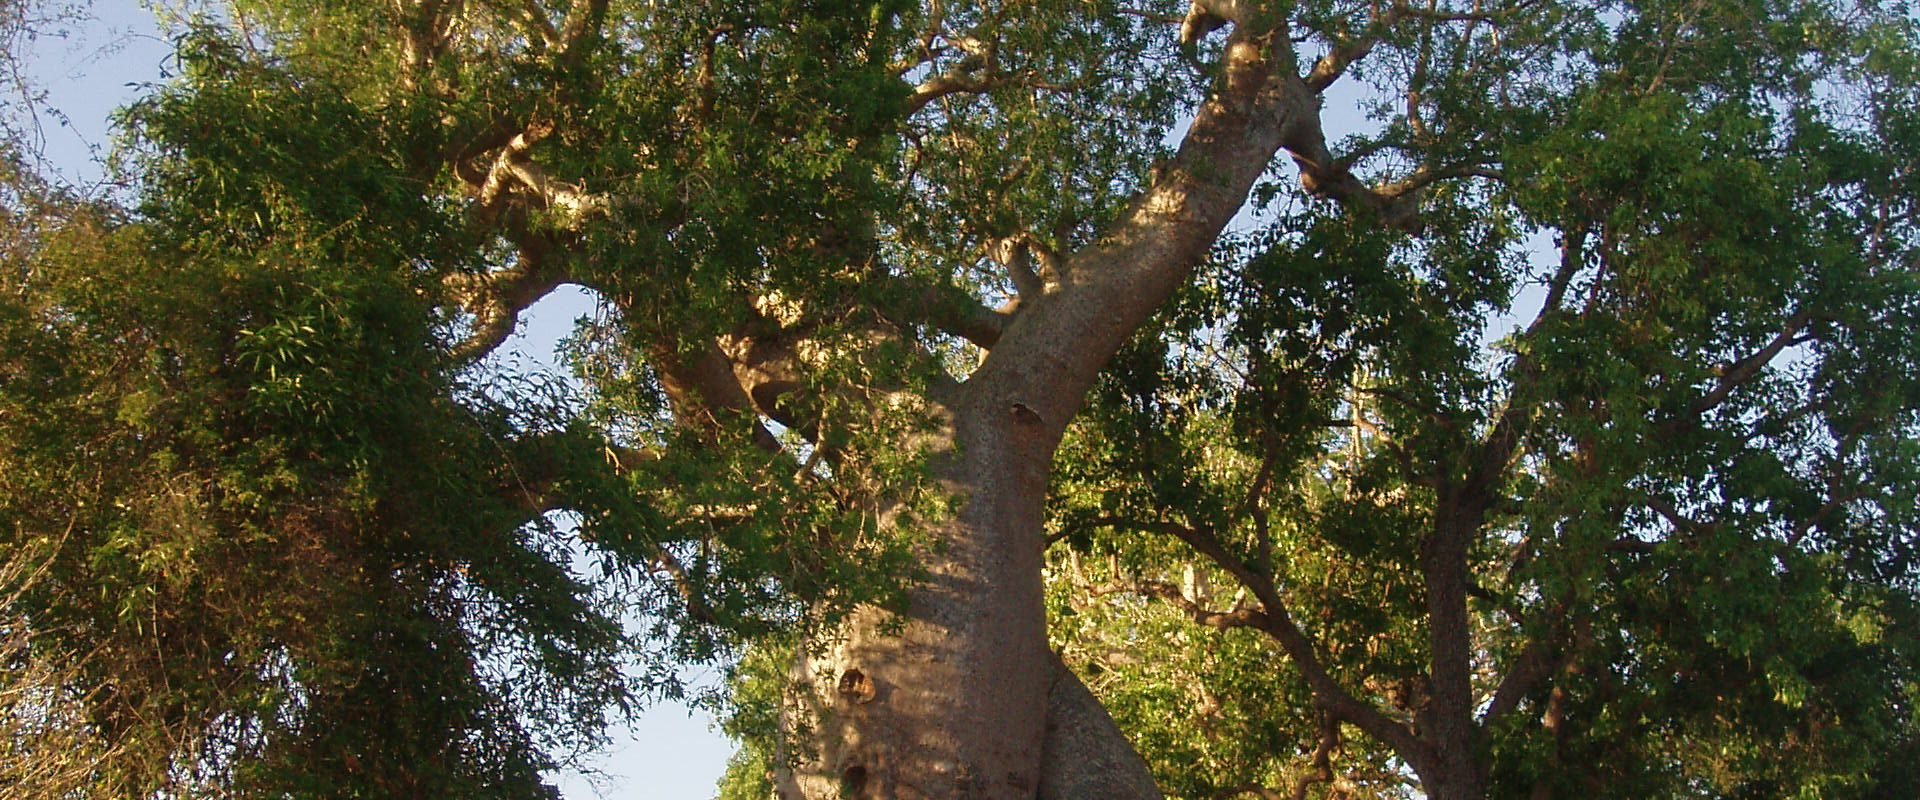 Randonnée sur la route des Baobabs amoureux à Madagascar